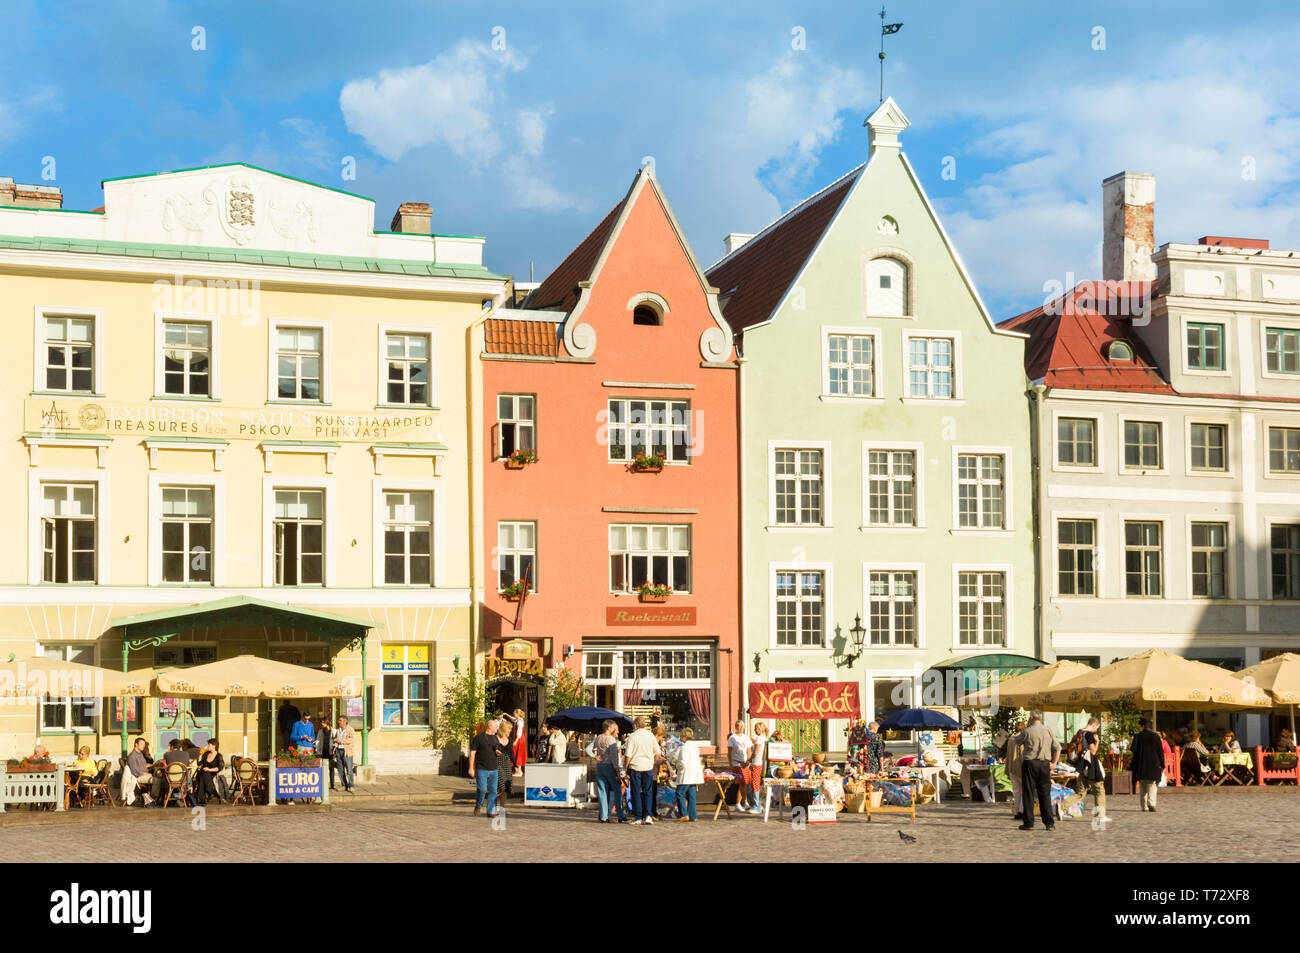 Les gens dans les cafés avec des parapluies dans les rues pavées de la vieille ville médiévale place Raekoja Tallinn Estonie Etats baltes Banque D'Images